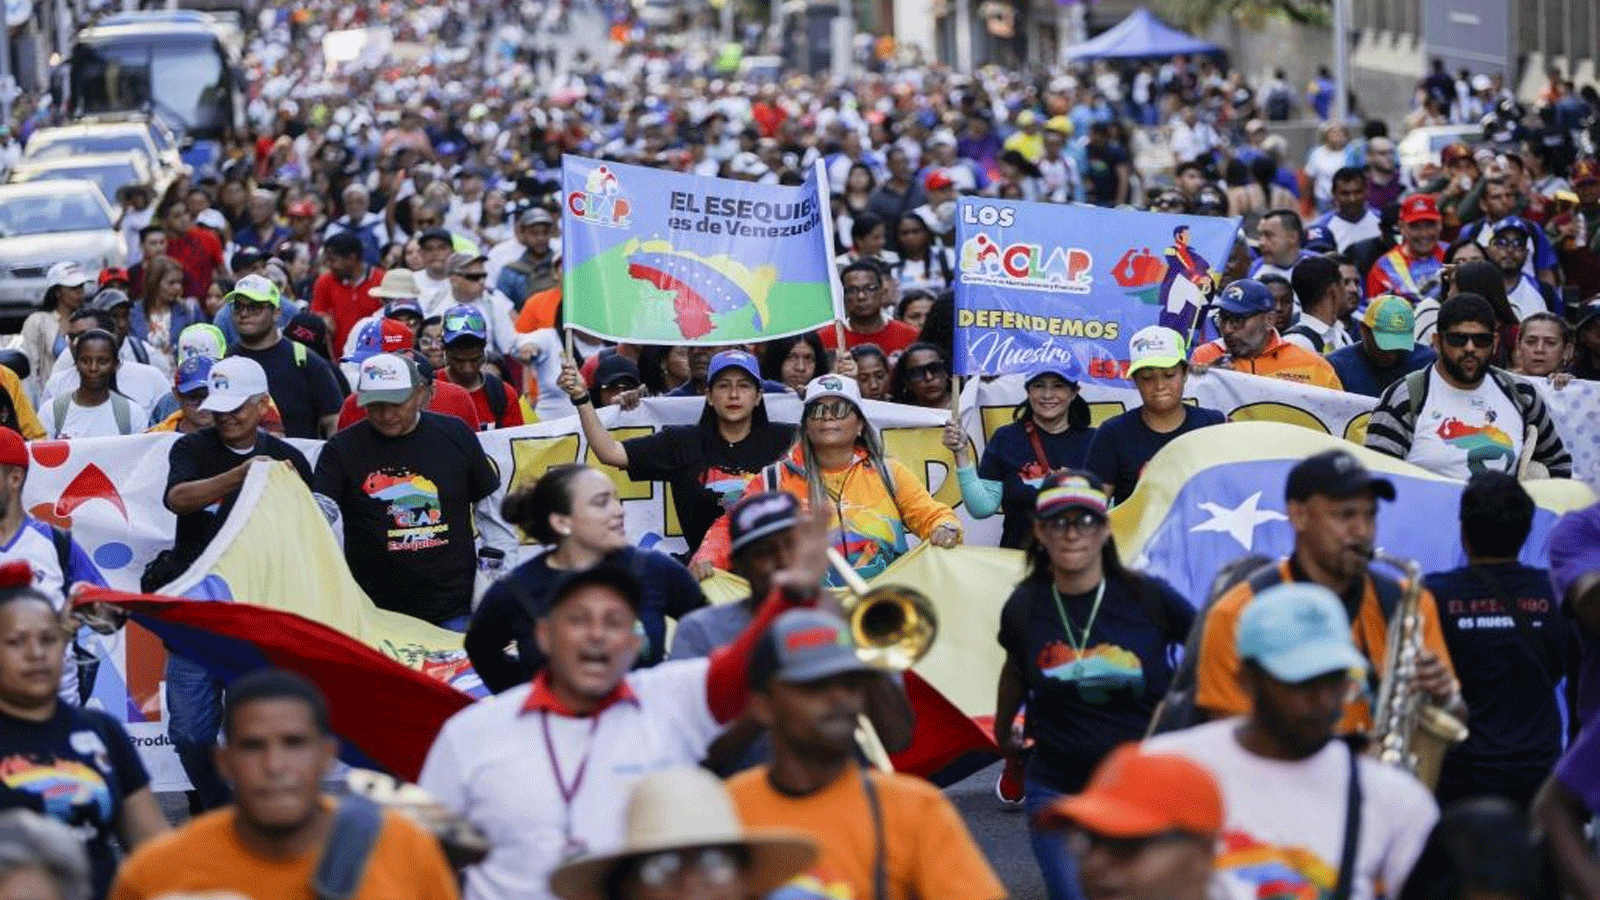 متظاهرون يؤيدون انضمام منطقة إيسيكيبو إلى فنزويلا